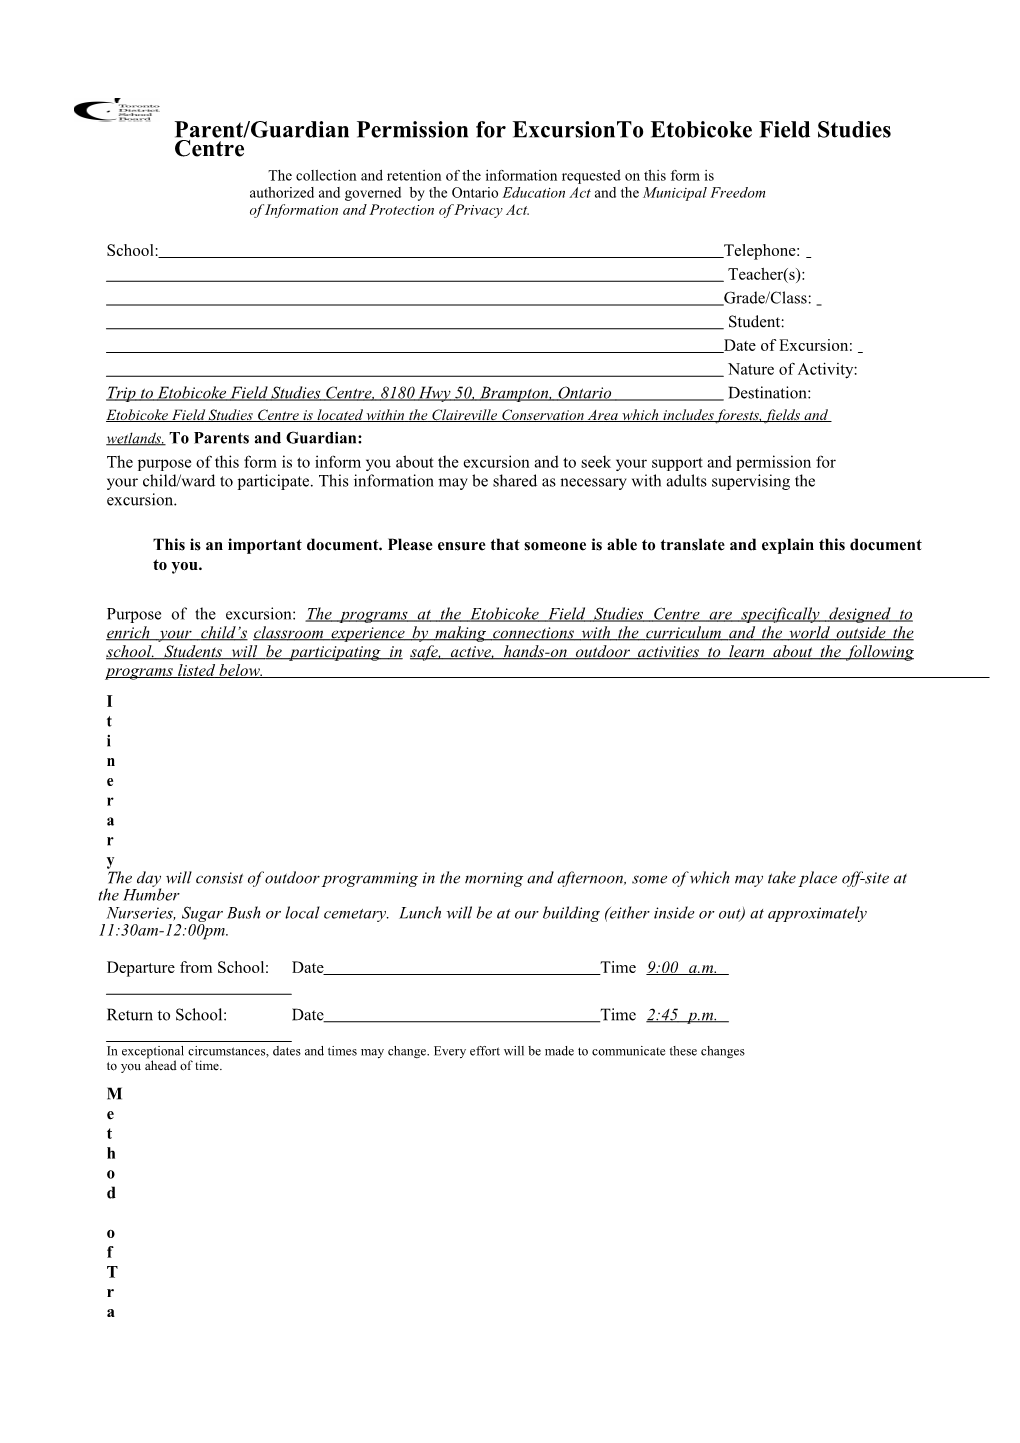 Parent/Guardian Permission for Excursionto Etobicoke Field Studies Centre